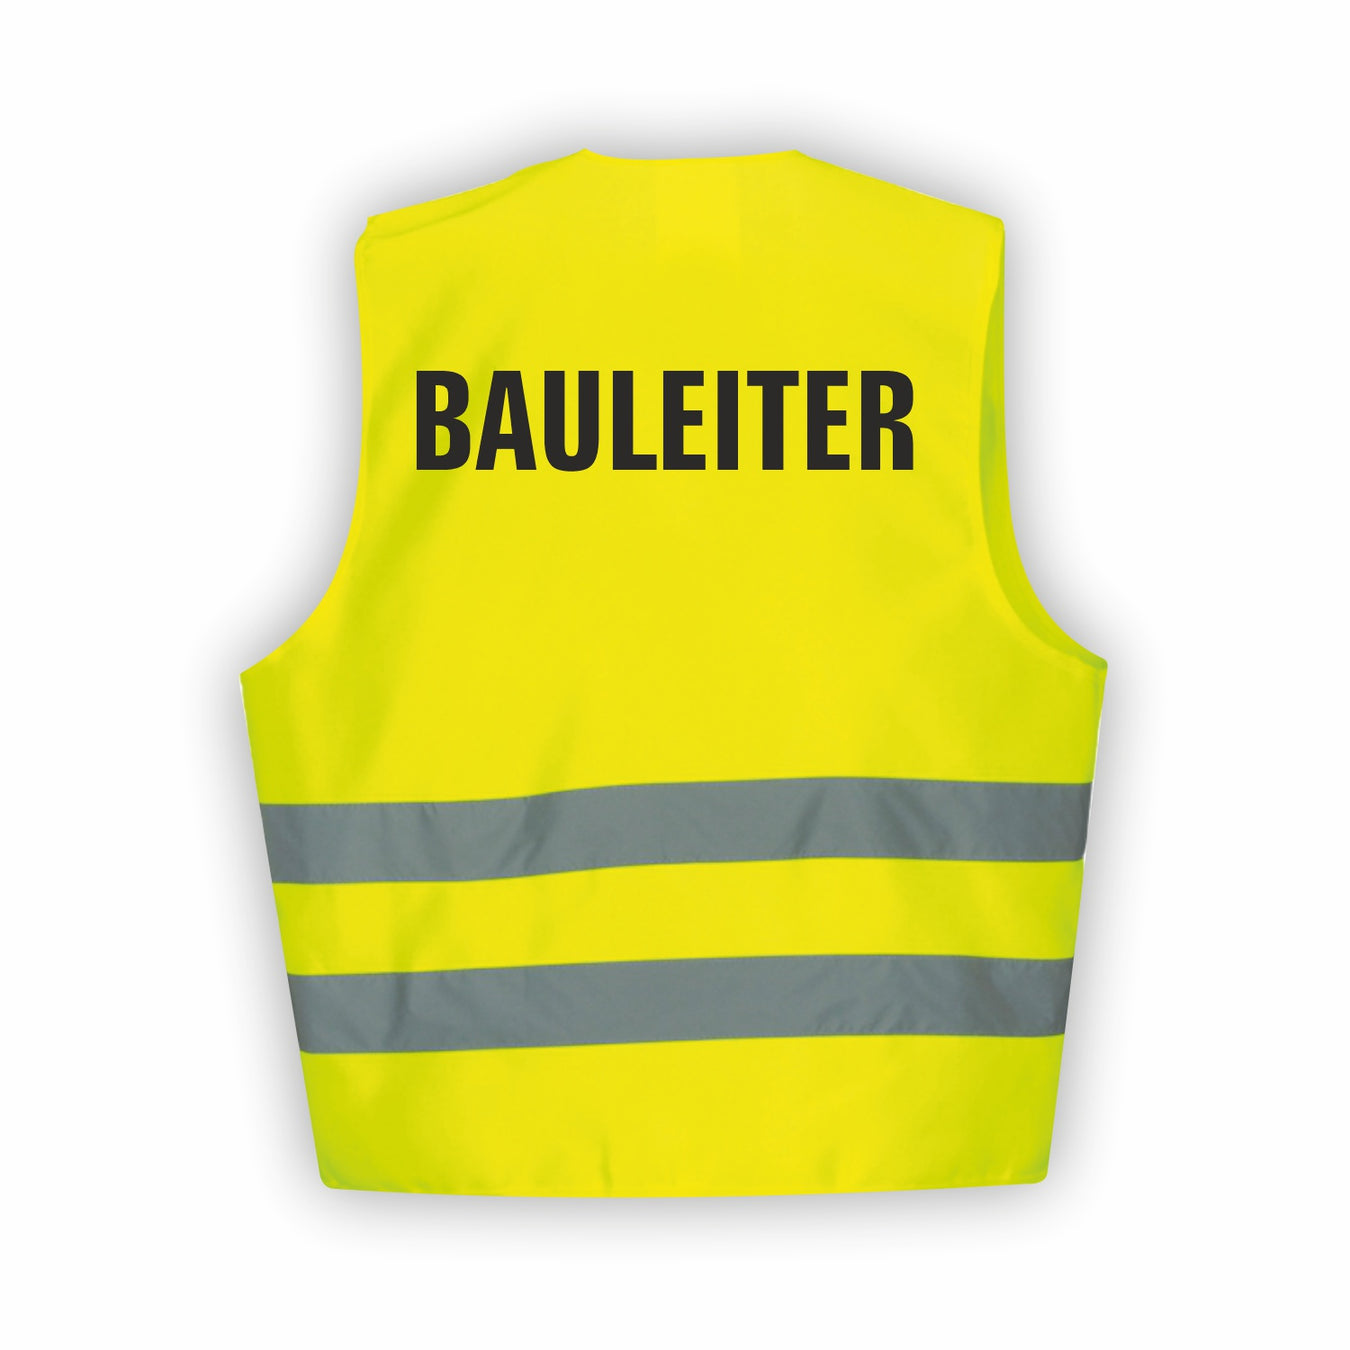 BAULEITUNG | BAUAUFSICHT Warnwesten & -jacken - Sicherheitskleidung